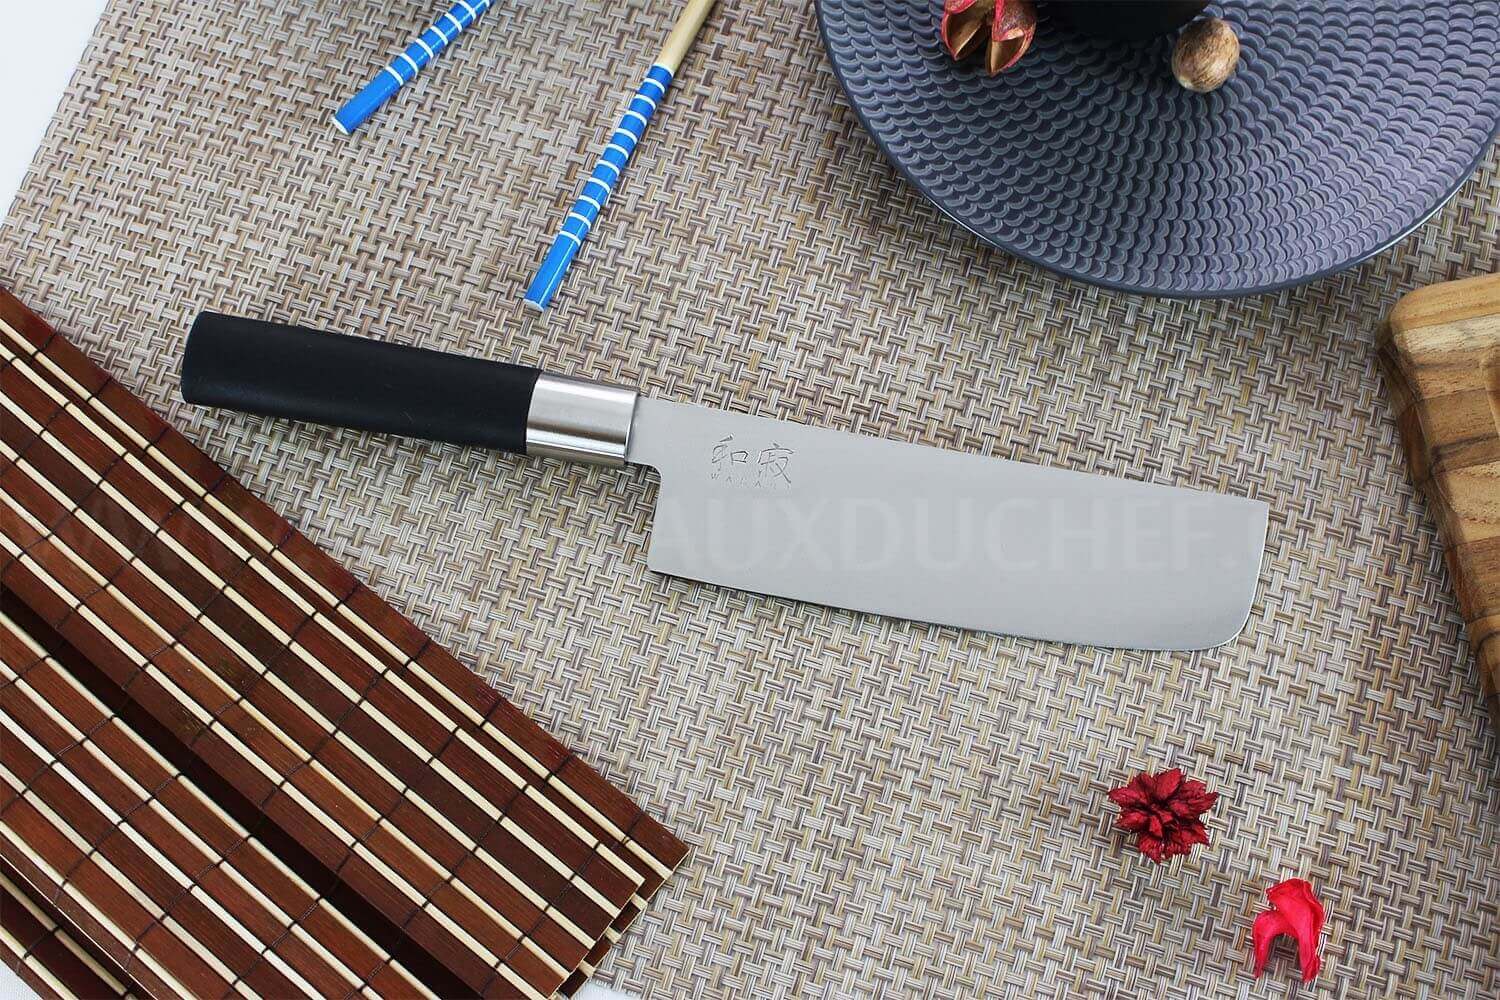 Couteau Nakiri 16.5 cm Wasabi Black Kai 